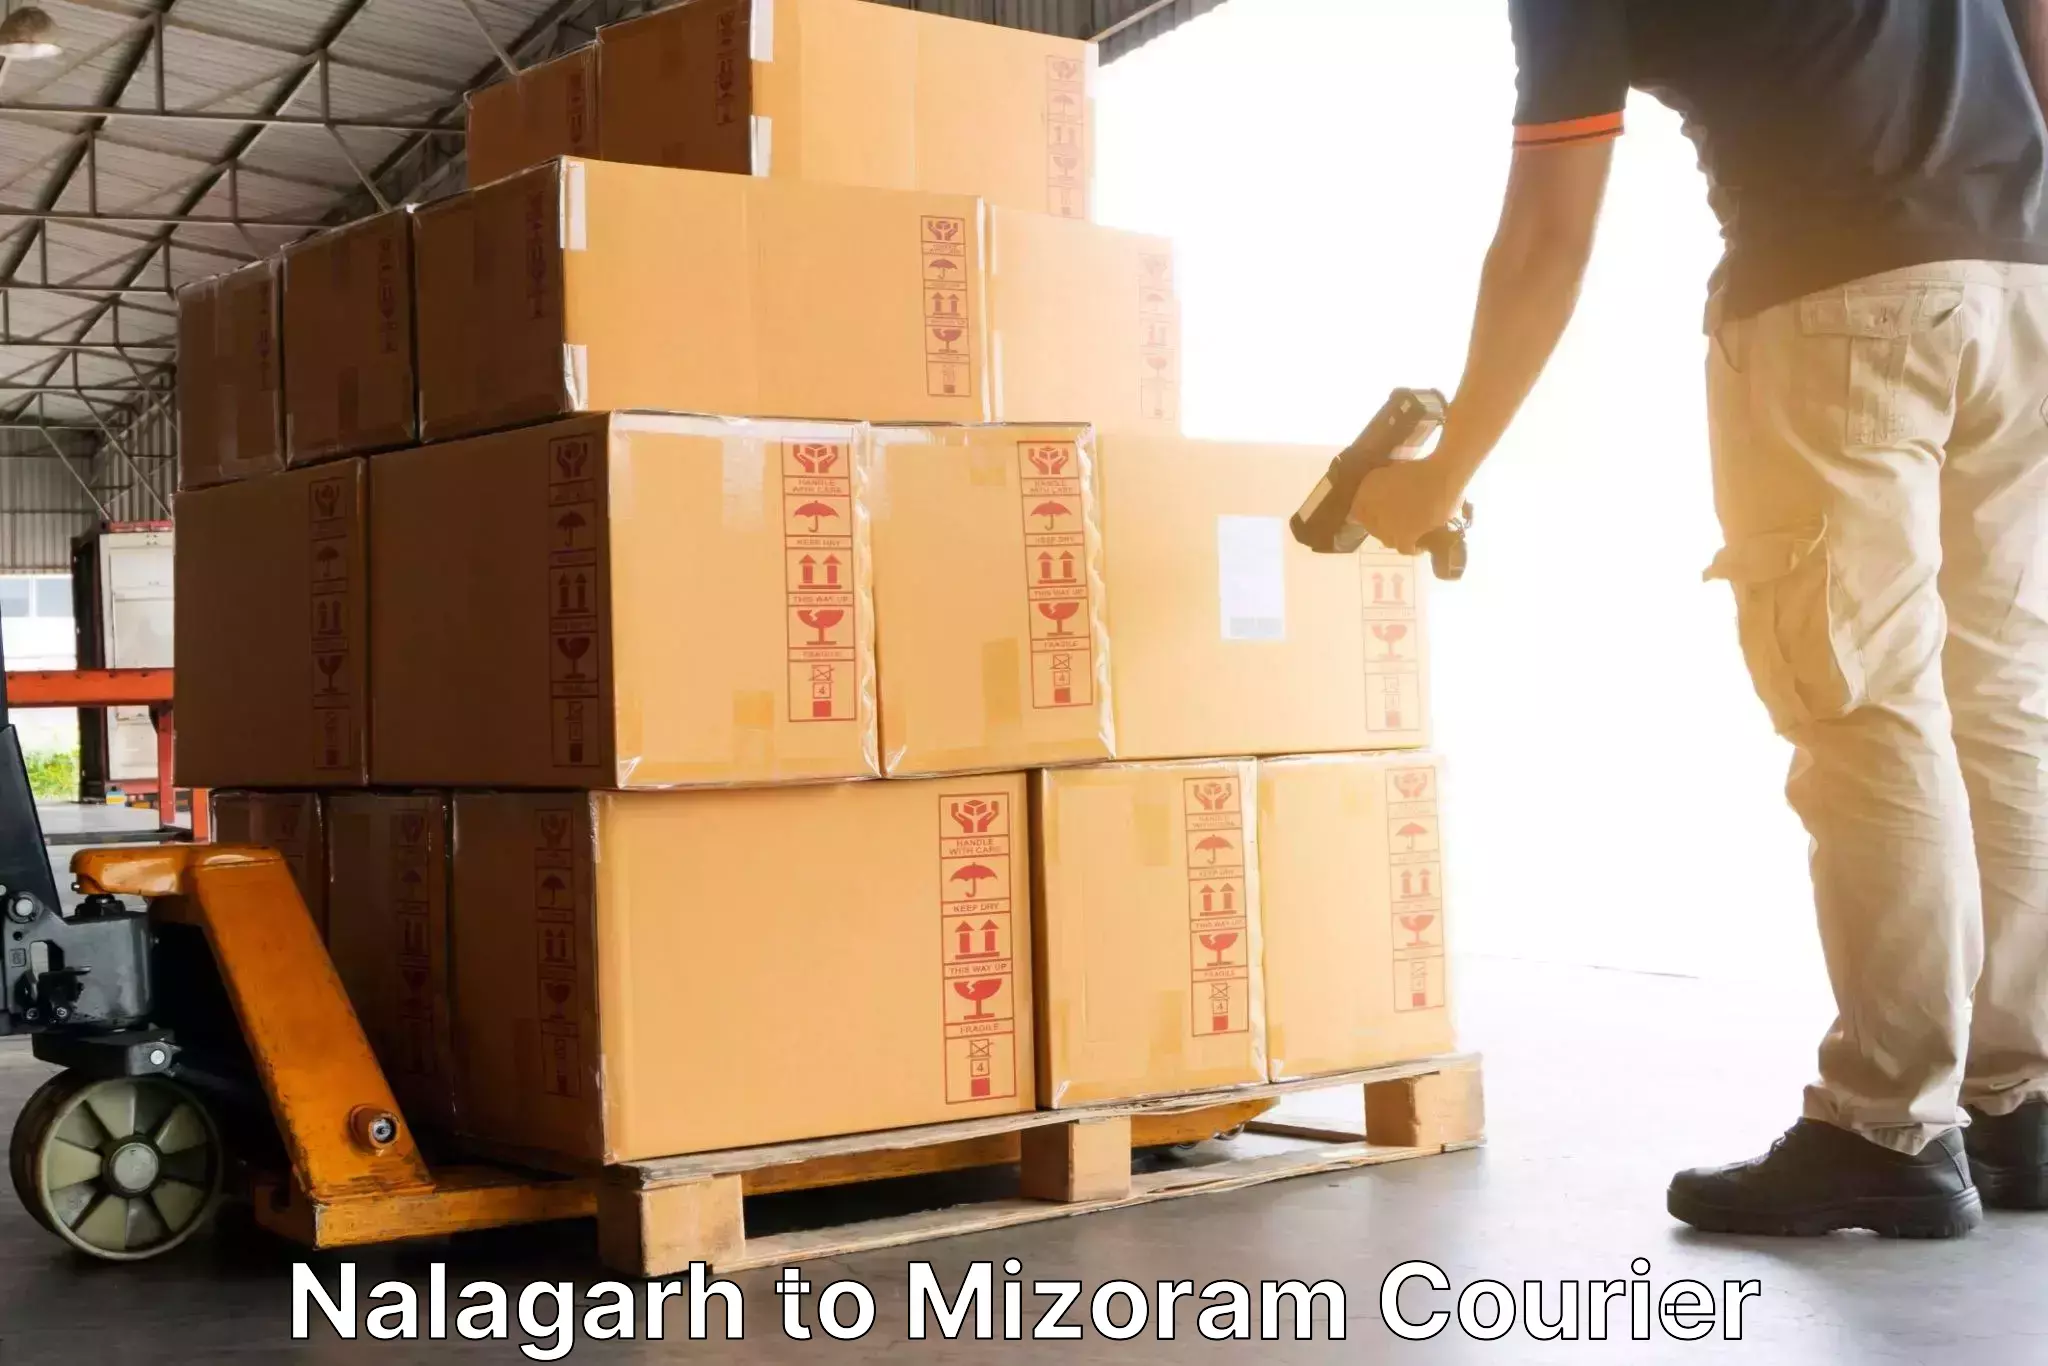 Reliable courier service Nalagarh to Saitual